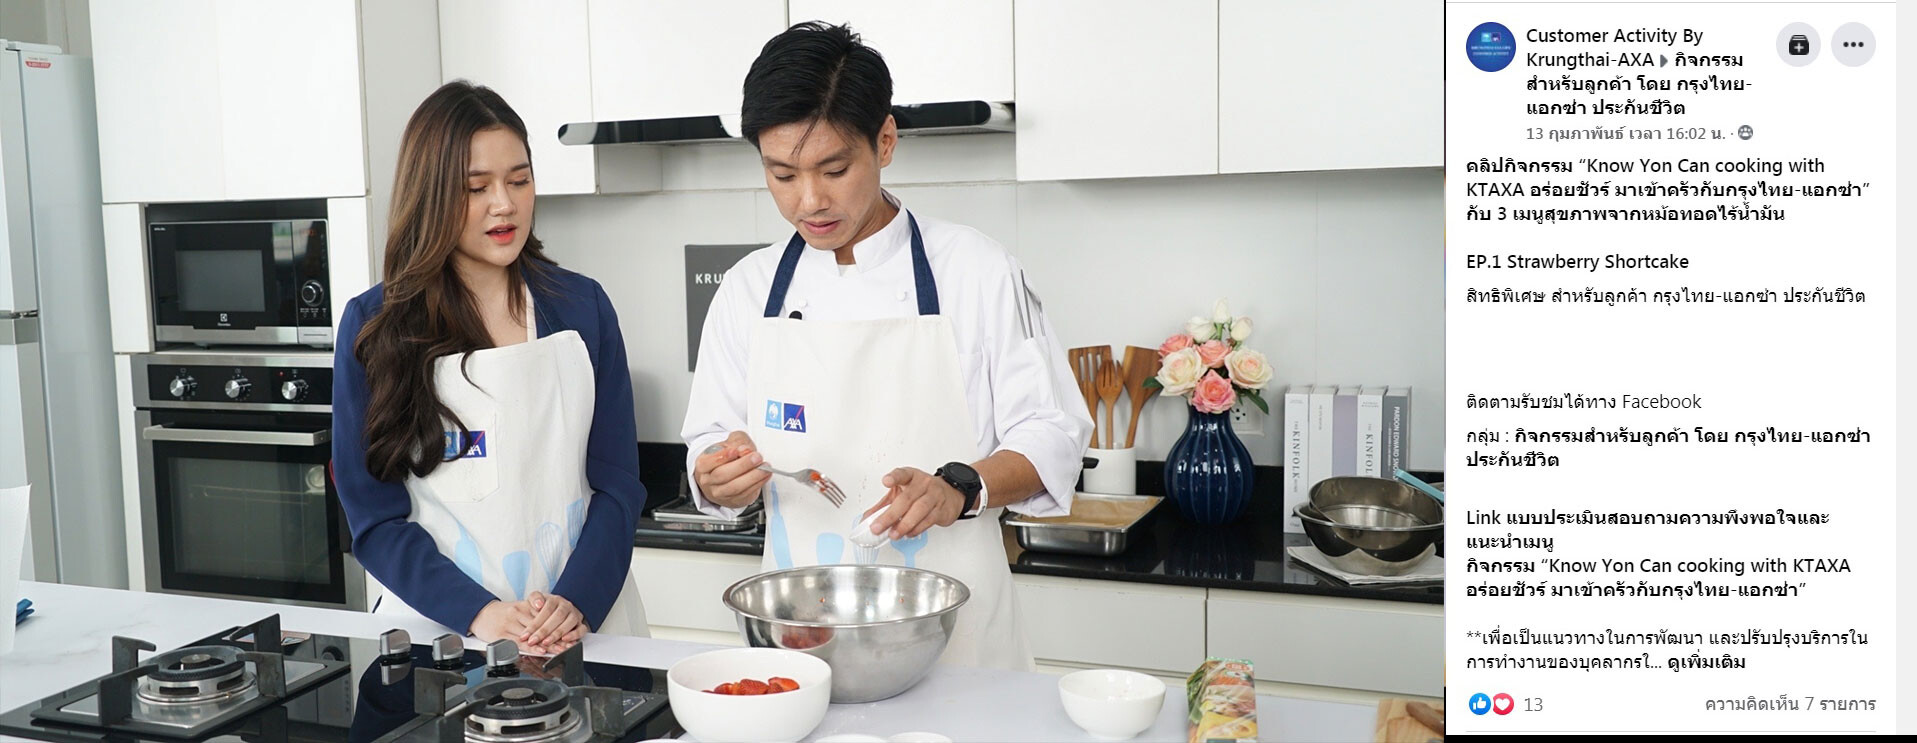 กรุงไทย-แอกซ่า ประกันชีวิต จัดกิจกรรม Know You Can cooking อร่อยชัวร์ มาเข้าครัวกับกรุงไทย-แอกซ่า